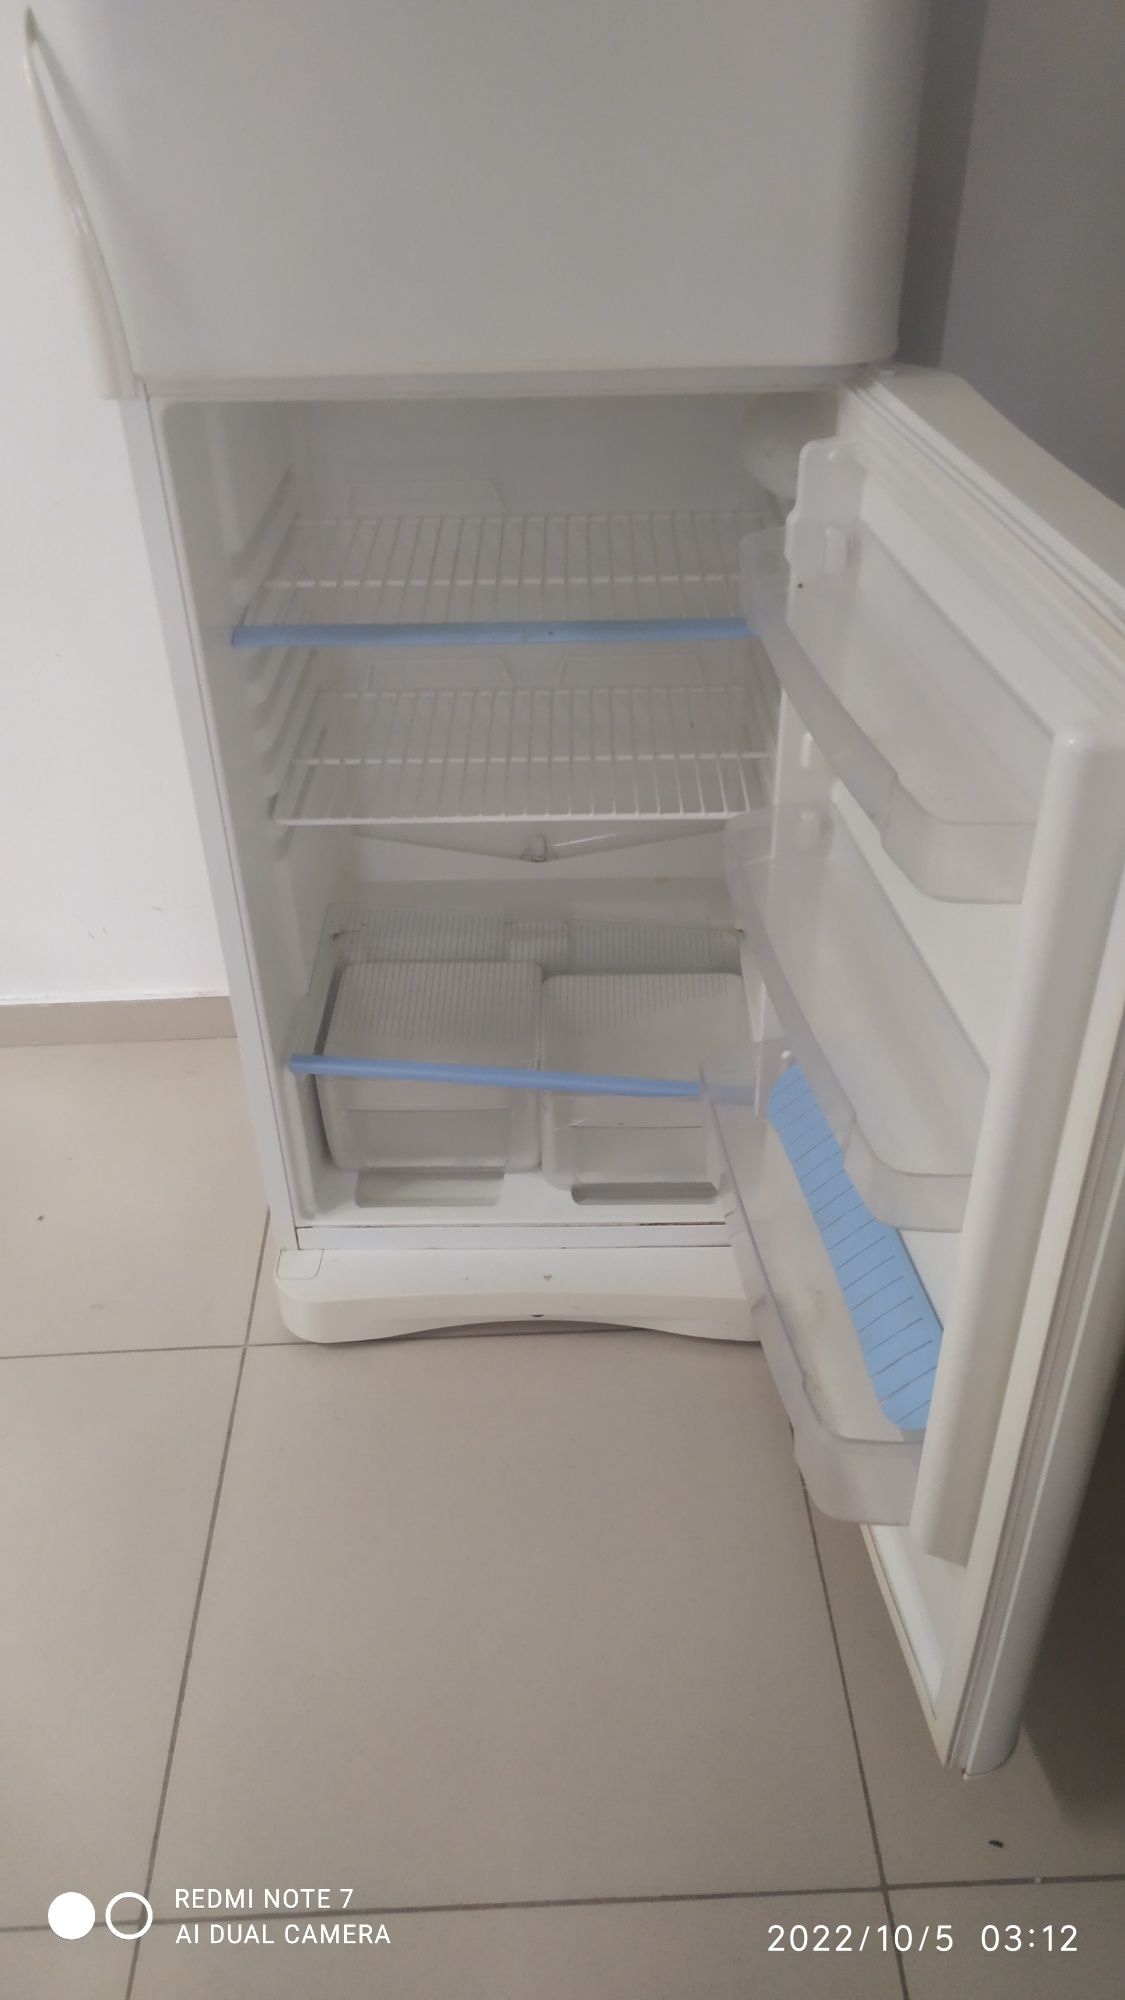 Индезит Холодильник 45000